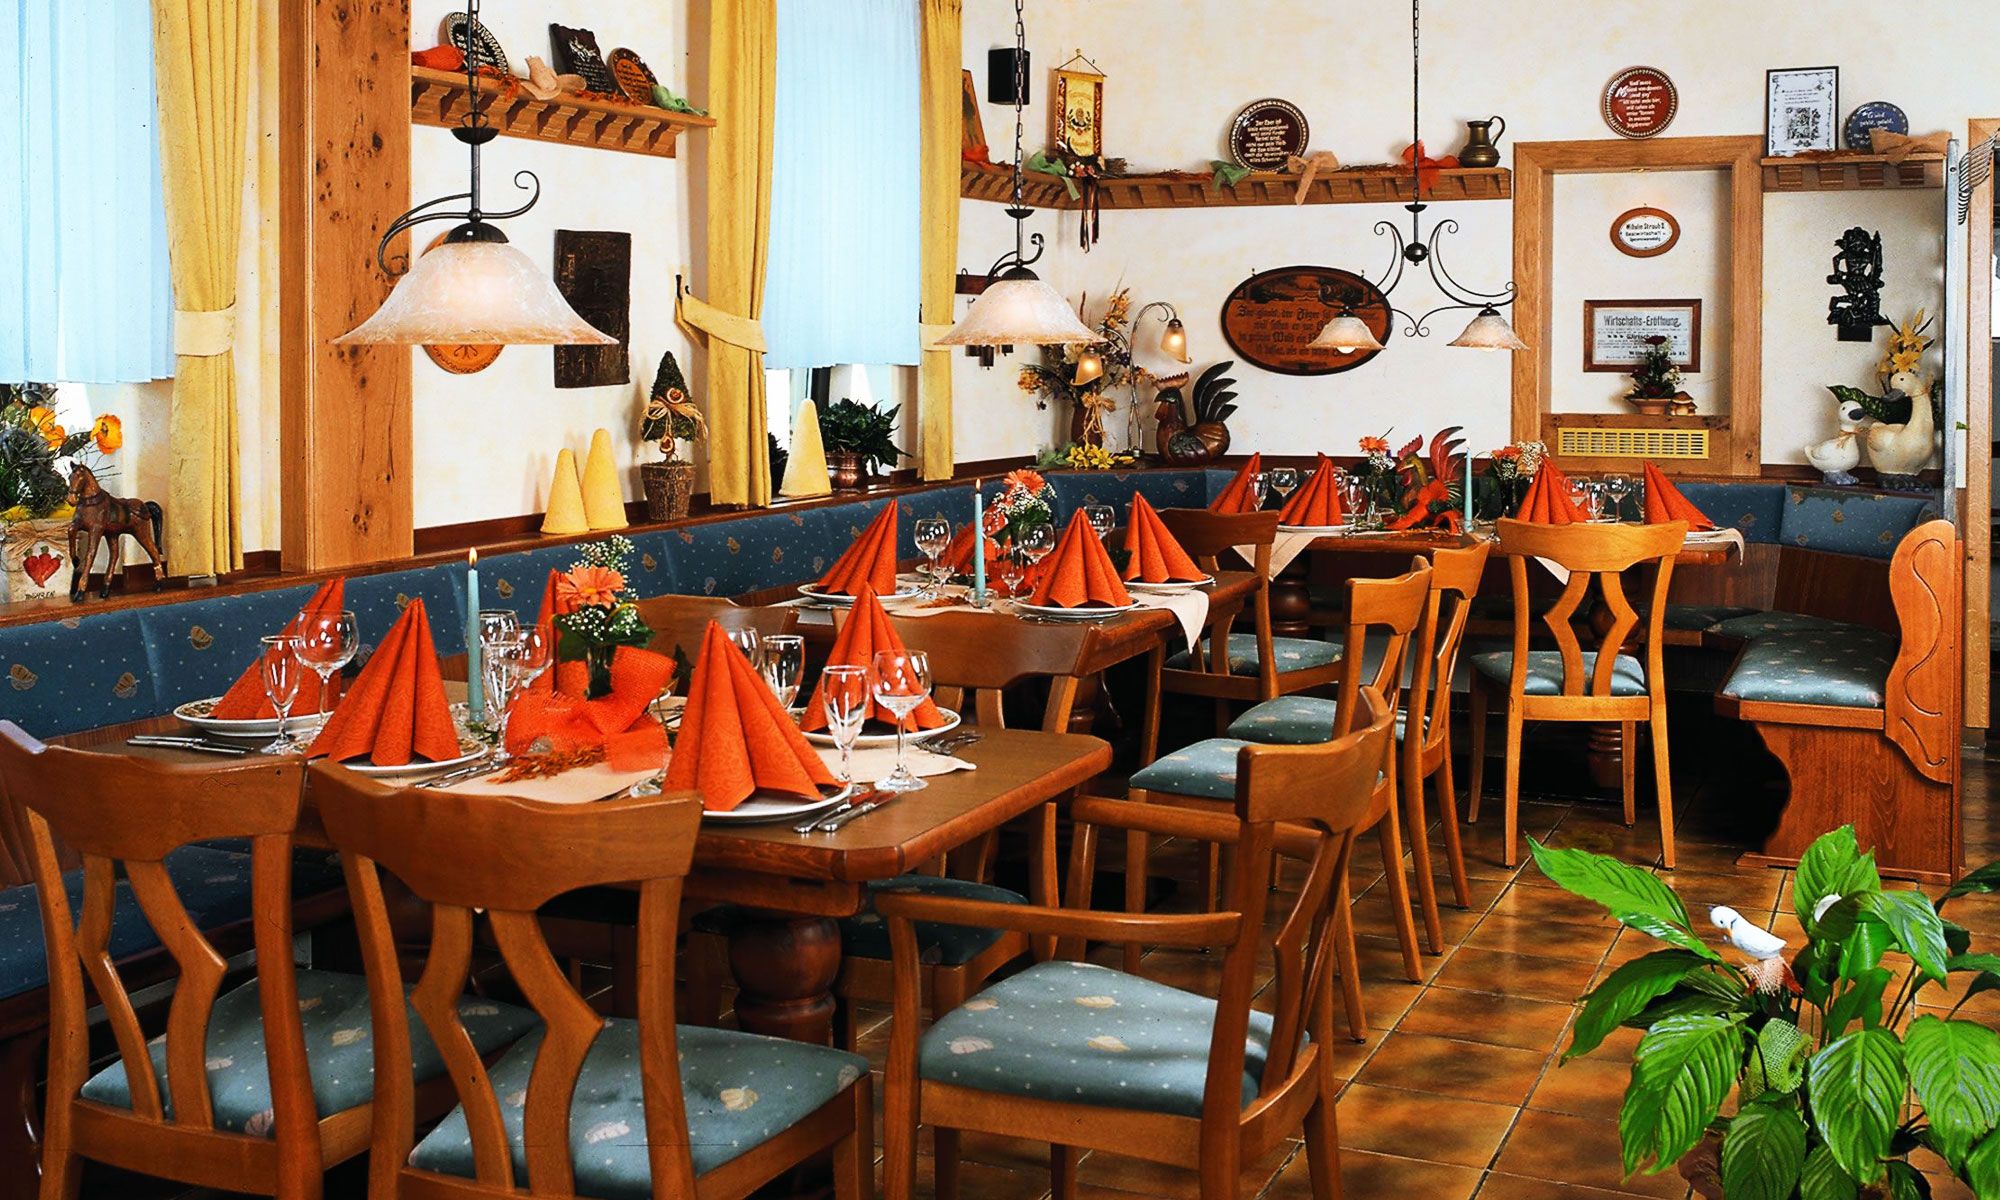 Landgasthof Kupferschmiede - Unser Restaurant erwartet Sie!